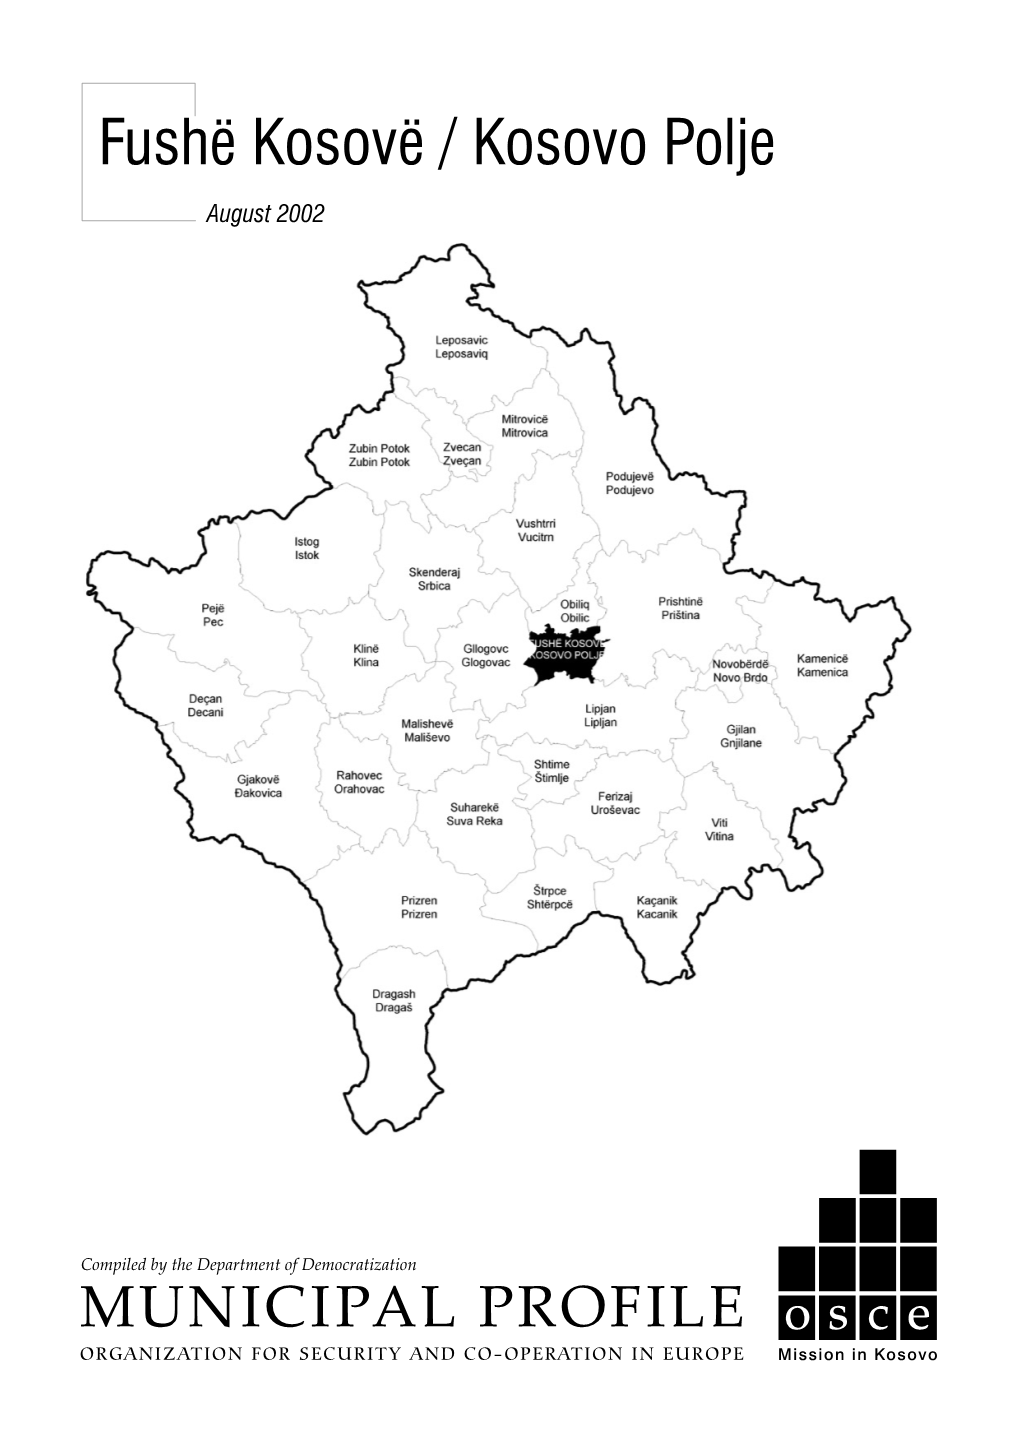 Fushë Kosovë / Kosovo Polje